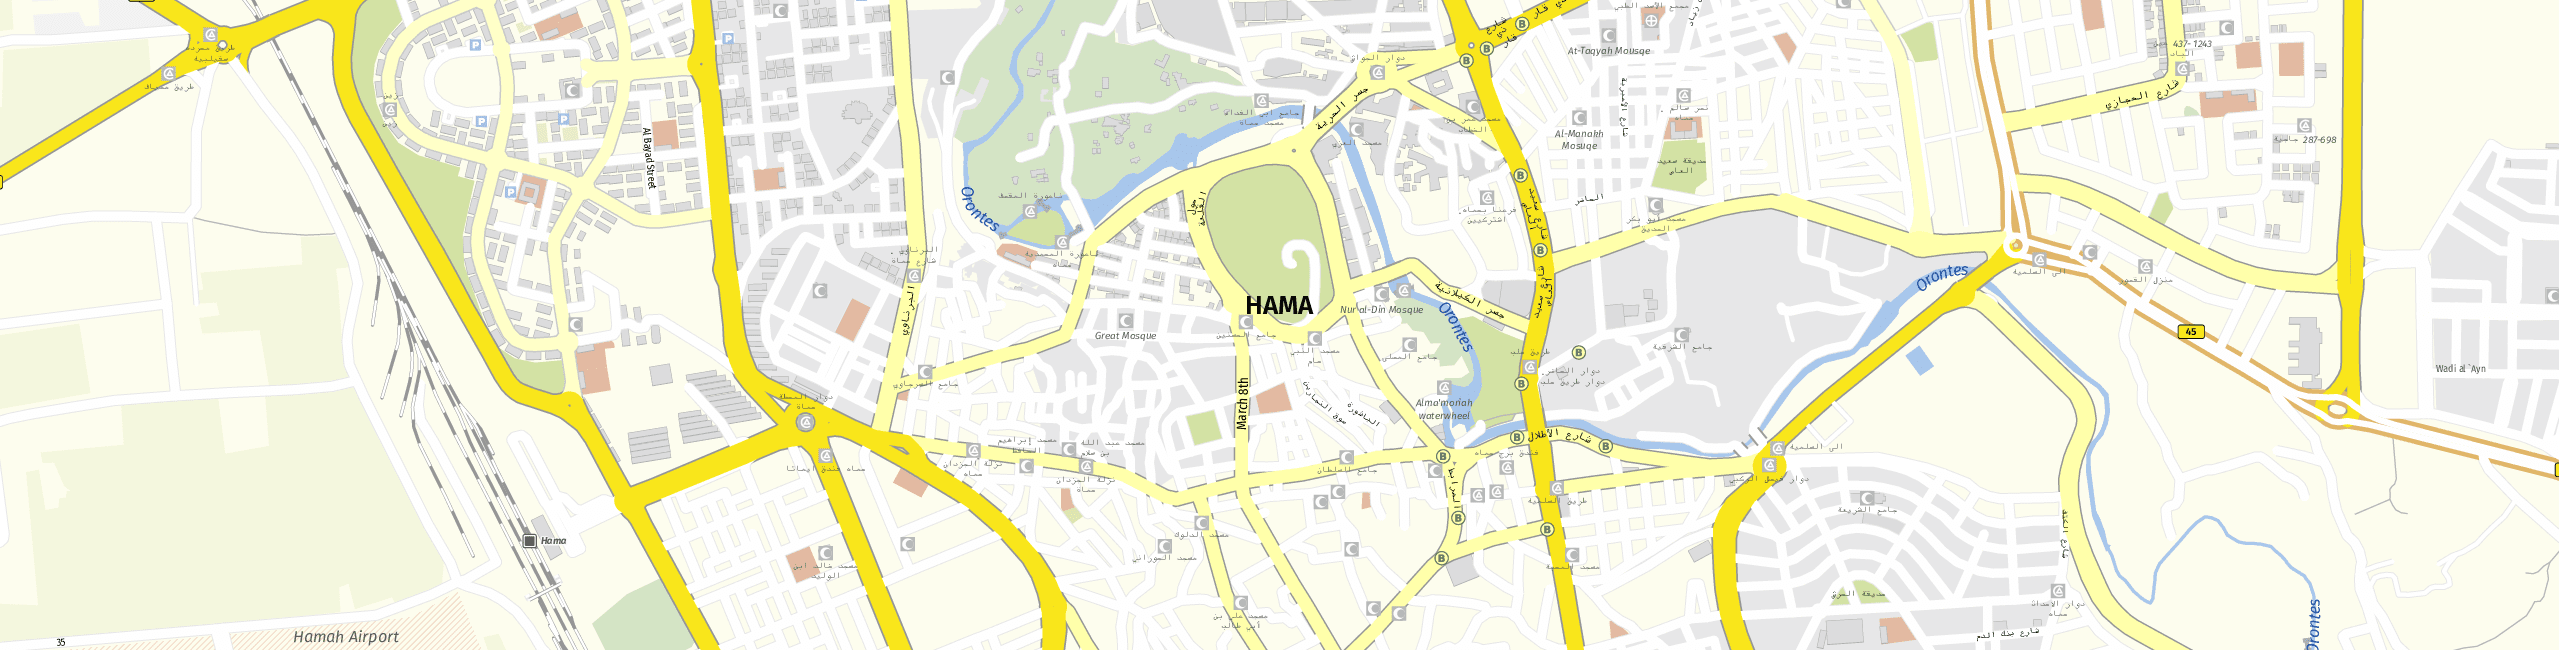 Stadtplan Hama zum Downloaden.